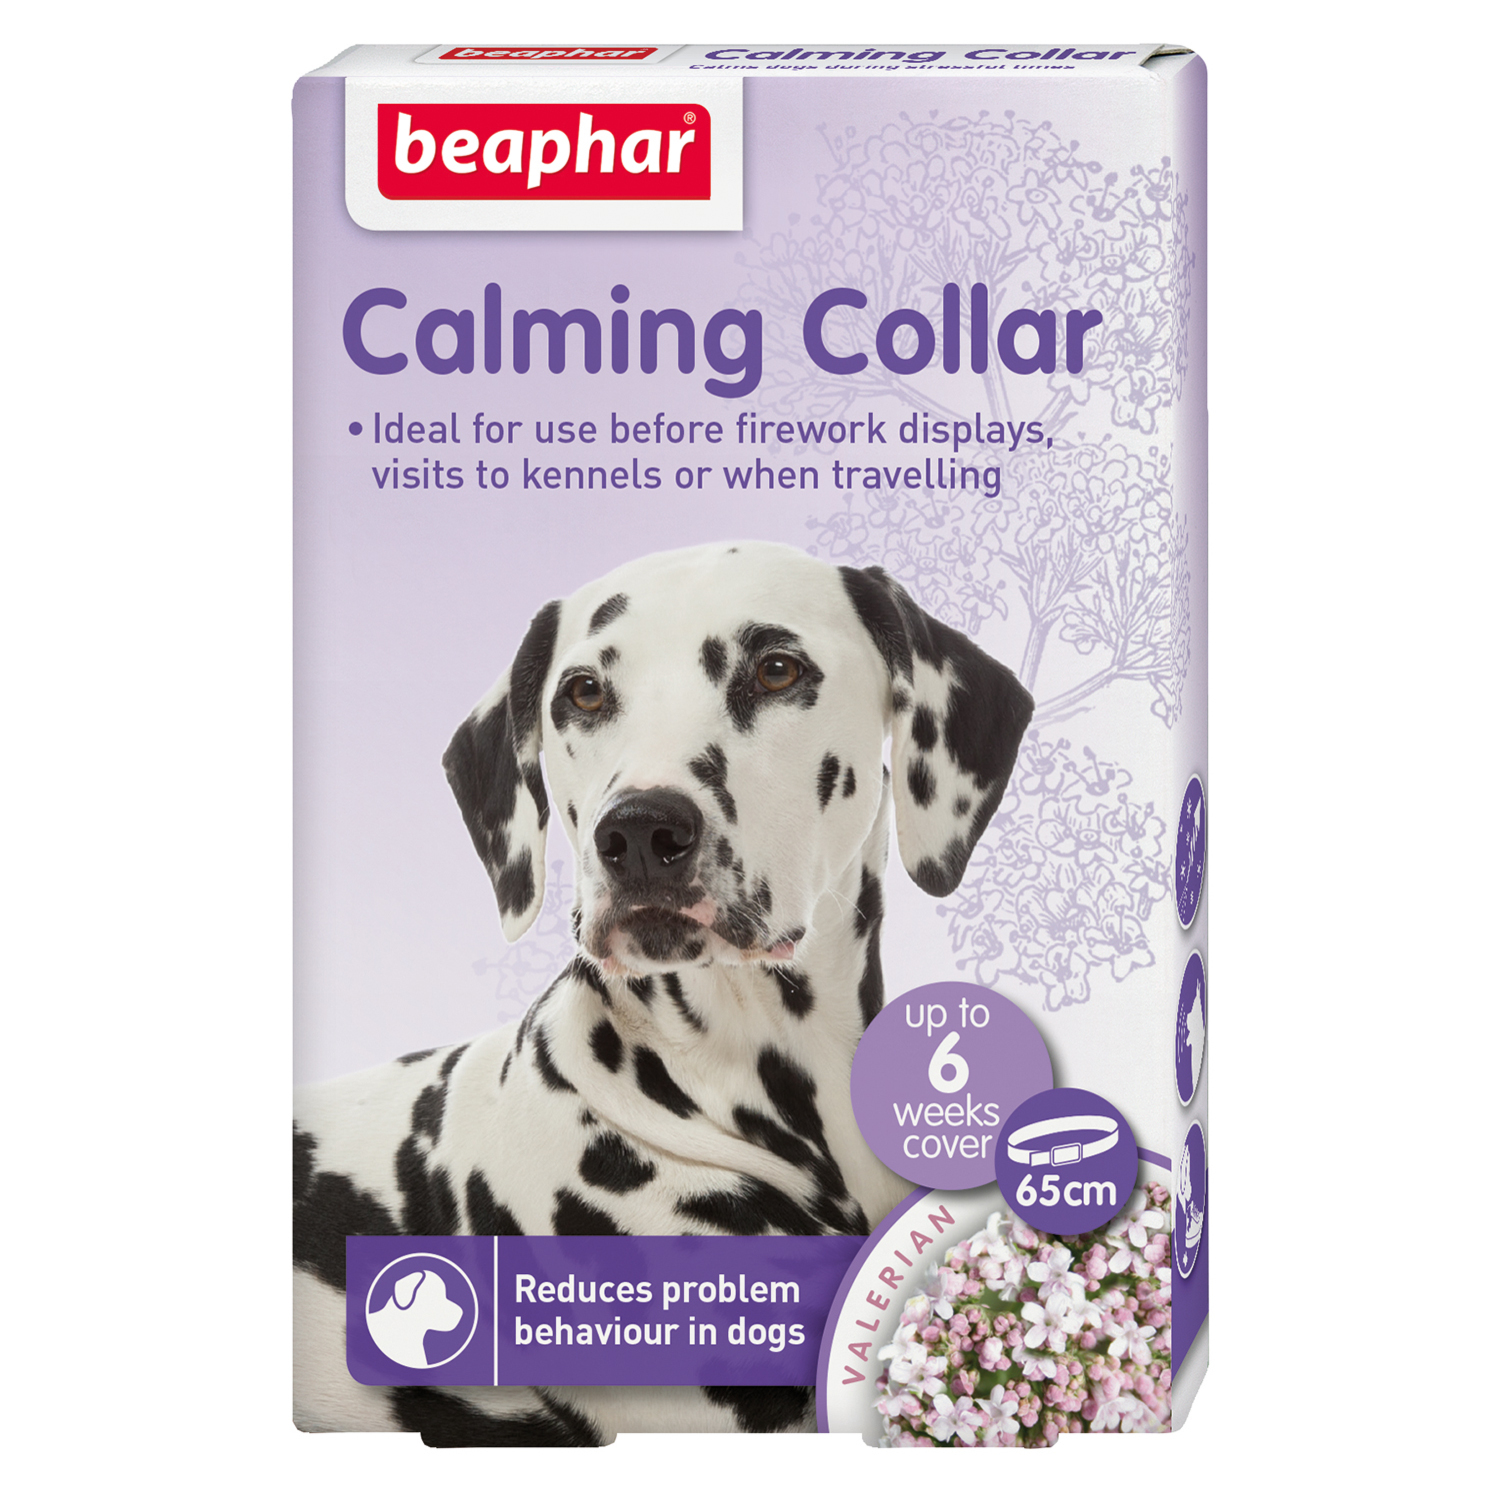 Beaphar Valerian Calming Collar for Dogs Image